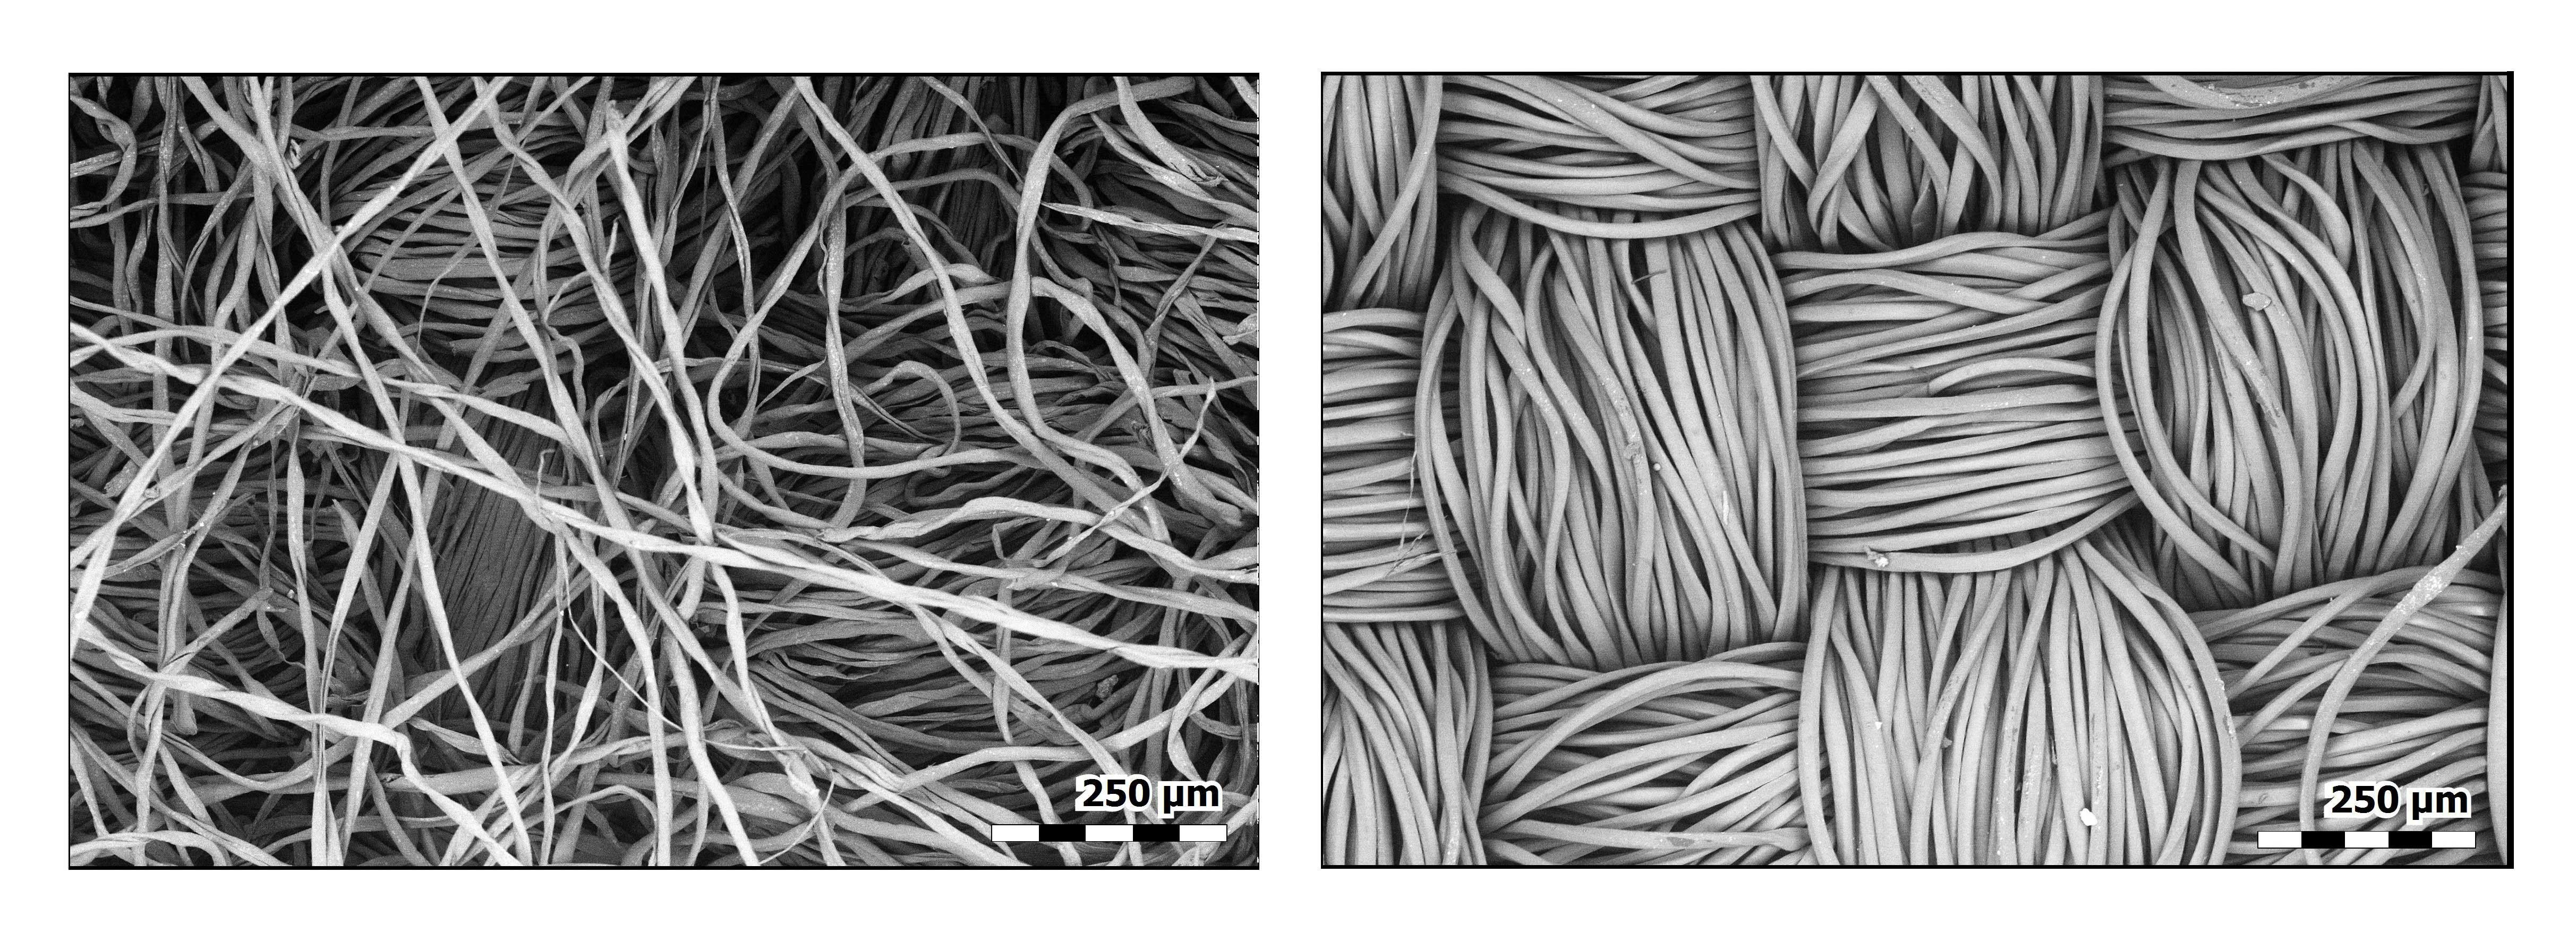 Acima, imagens de microscópio eletrônico de uma flanela de algodão (à esquerda) e poliéster (à direita). (Foto: .P. Vicenzi/Smithsonian’s Museum Conservation Institute and NIST)